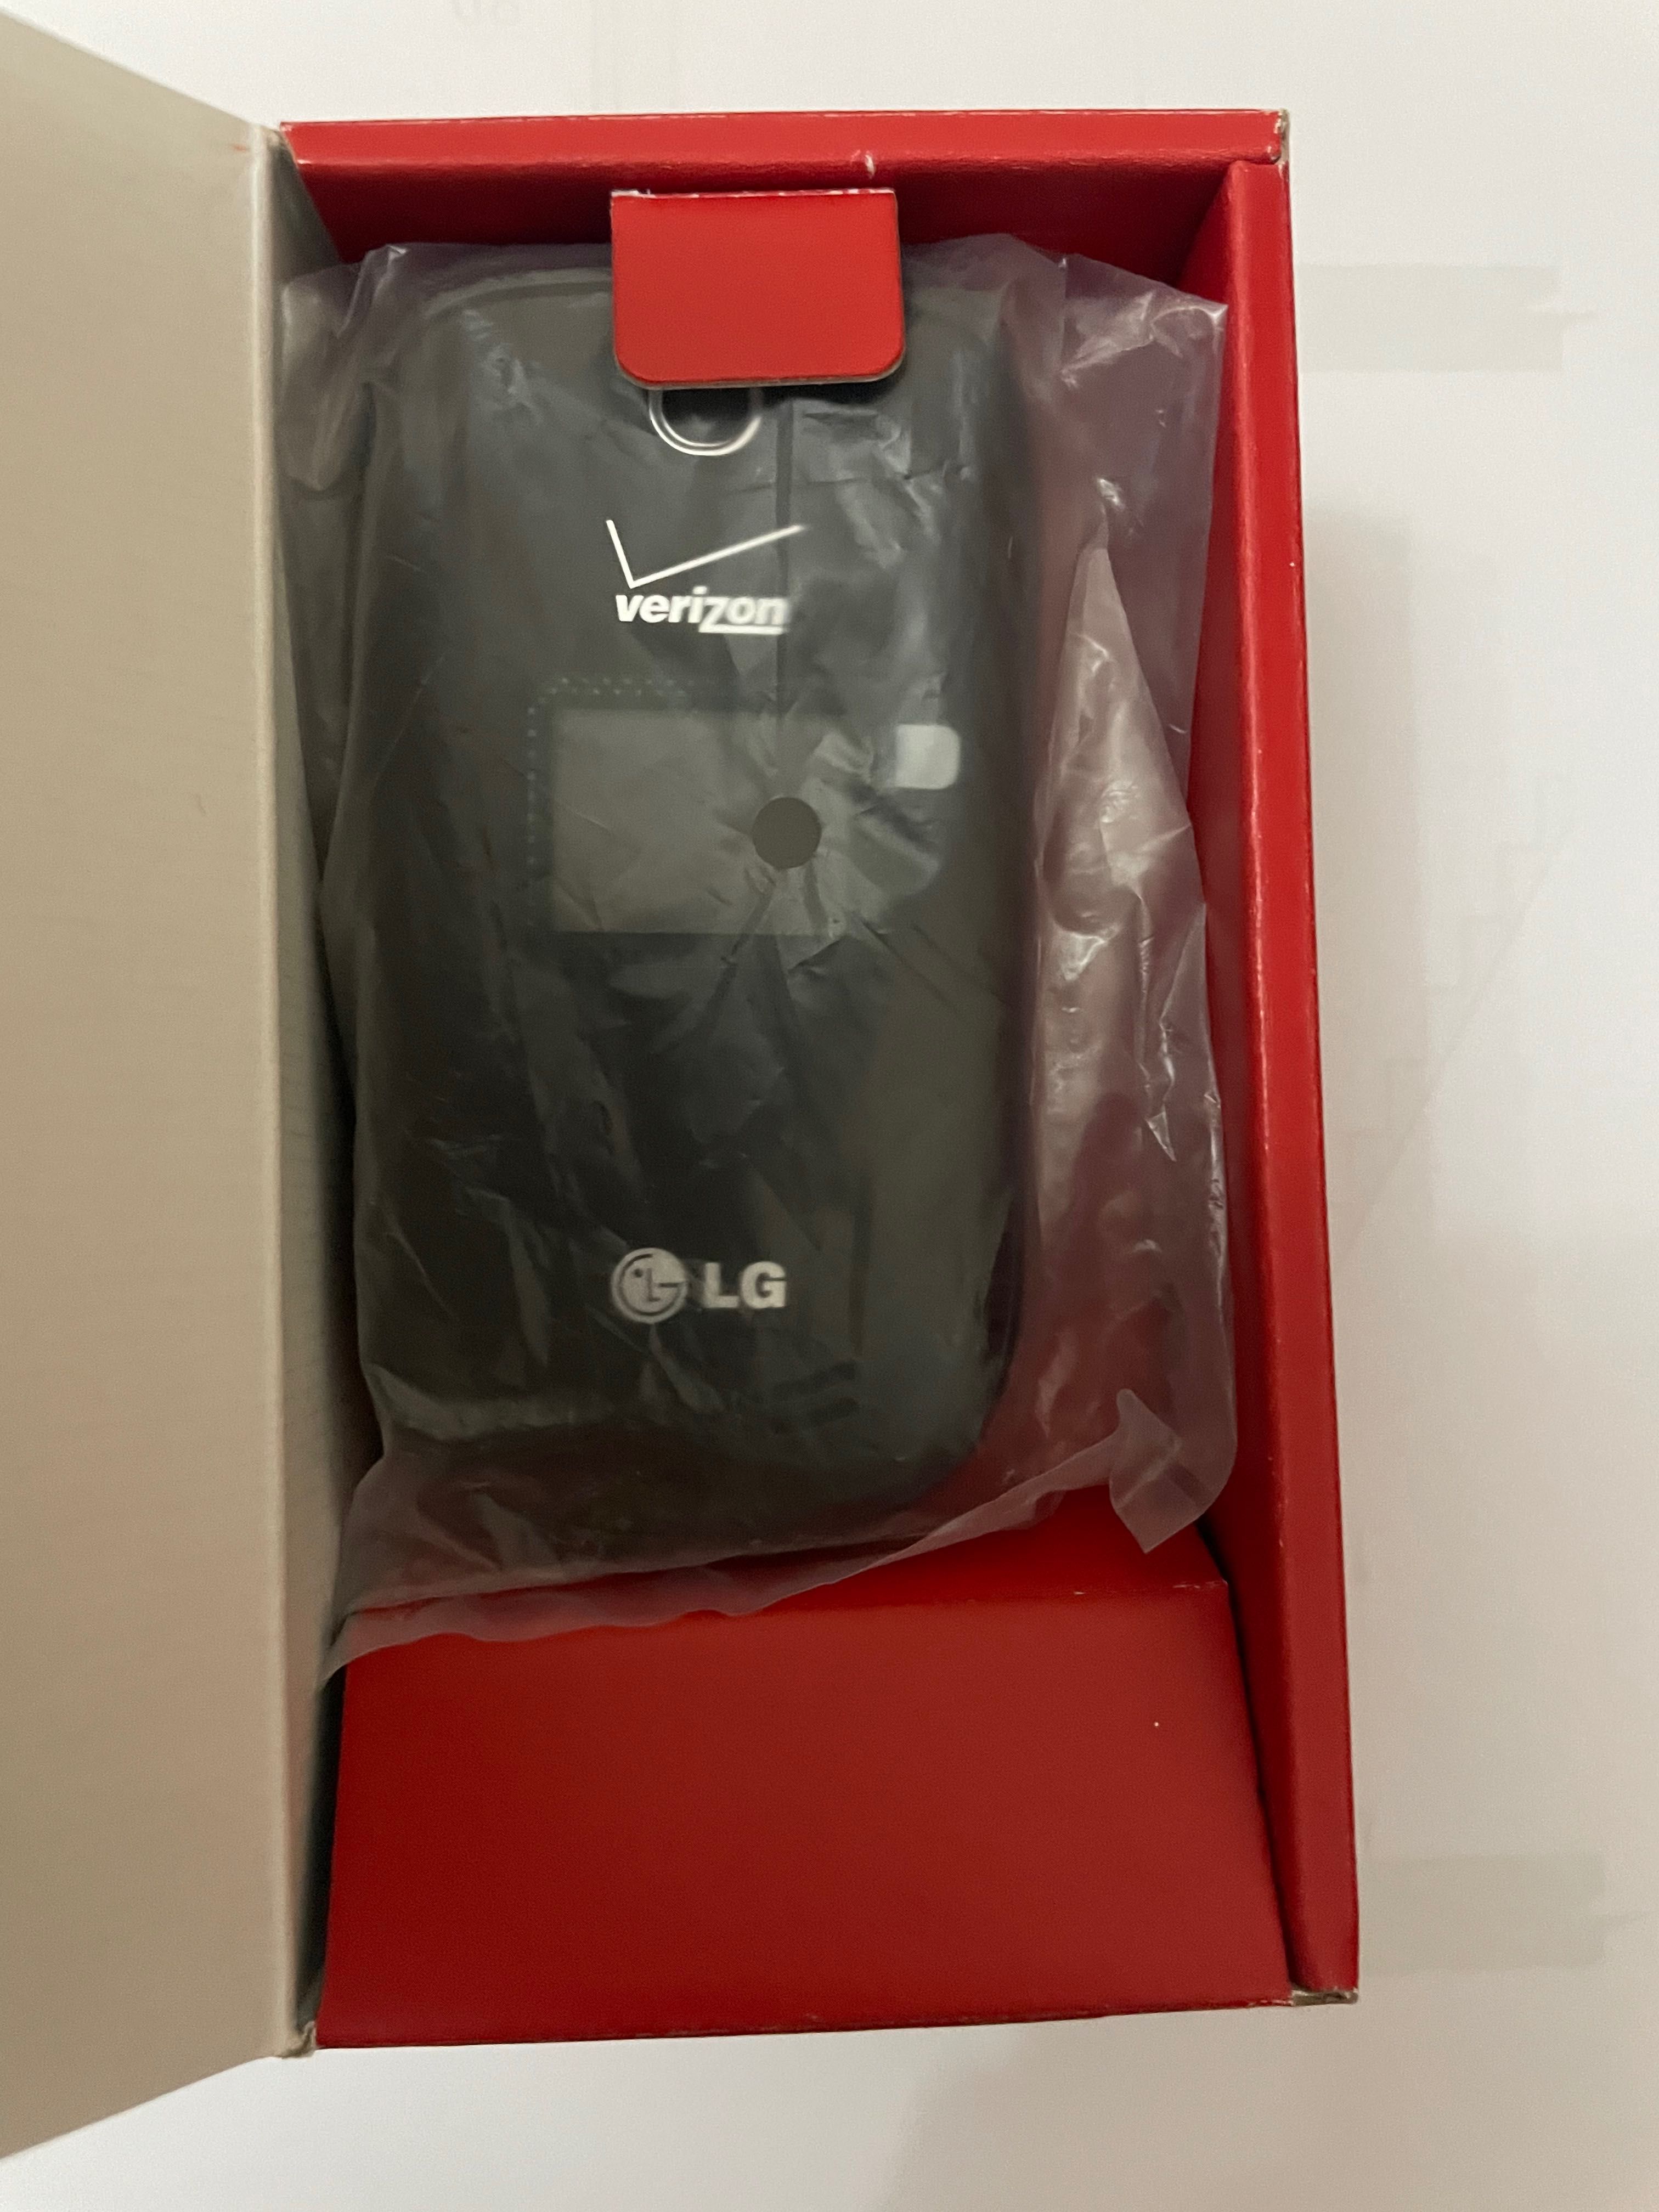 Продаётся новый LG-VN170 REVERE 3 Verizon original